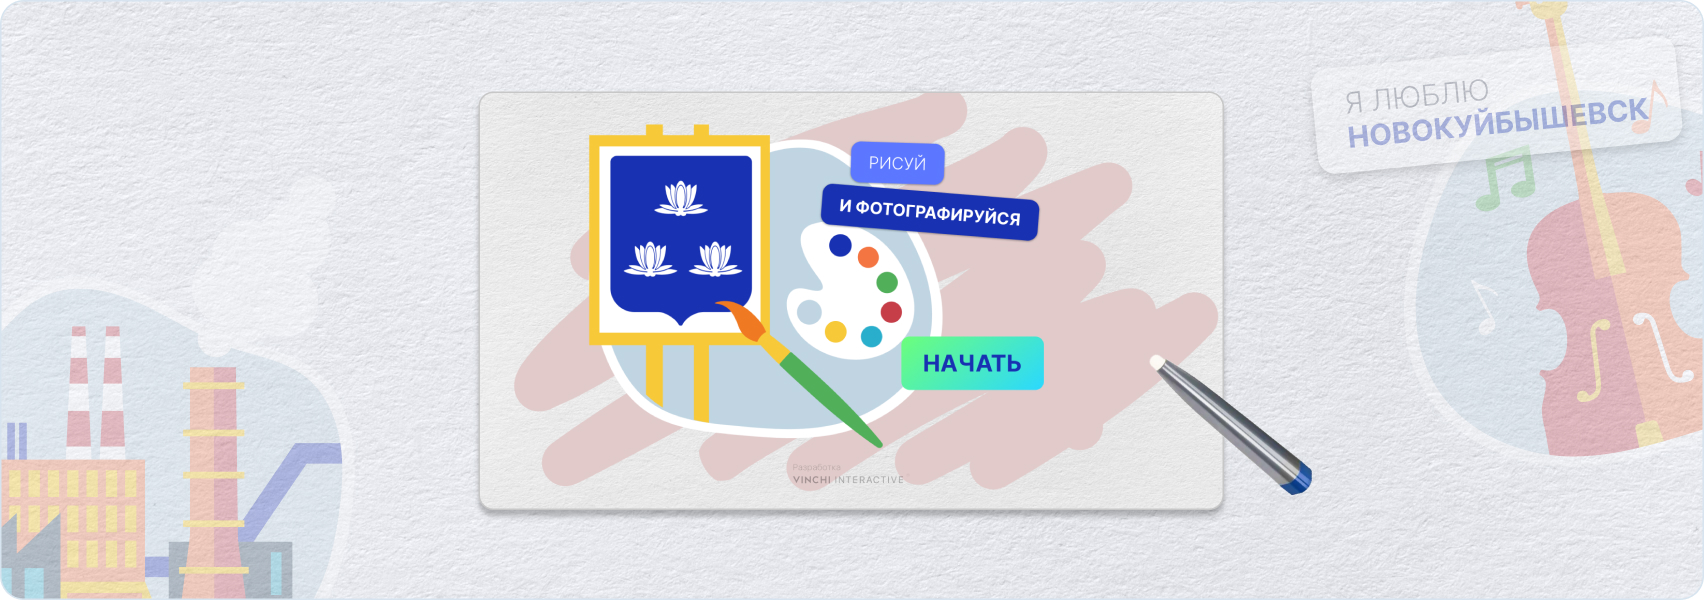 Интерактивная фотозона с рисованием для музея Новокуйбышевска